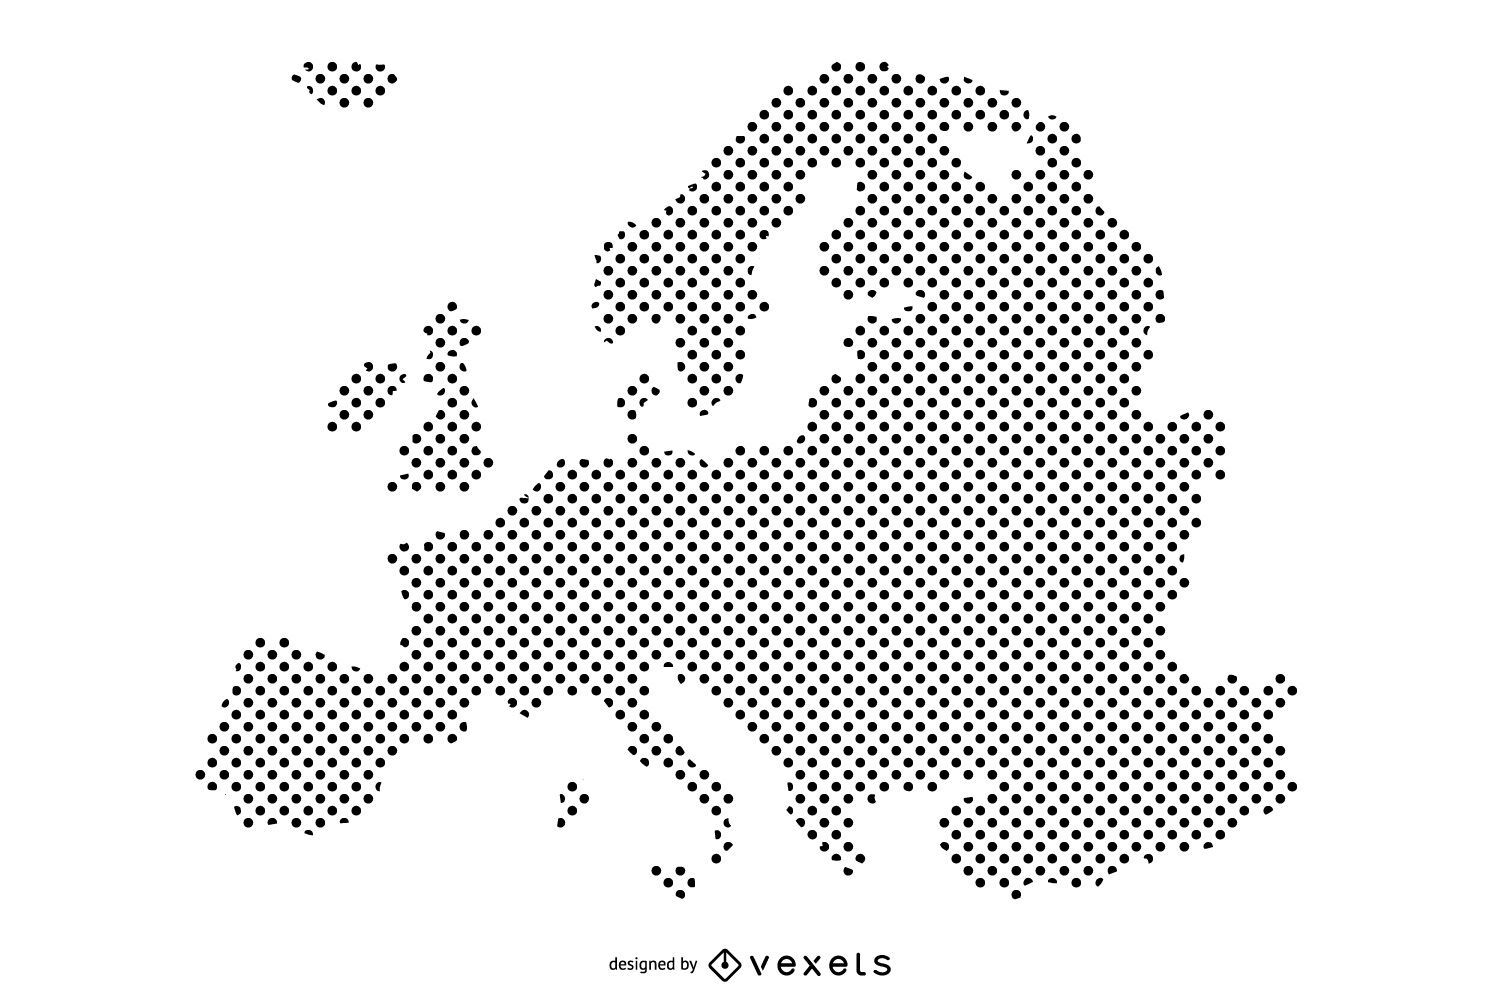 Design de mapa pontilhado da Europa